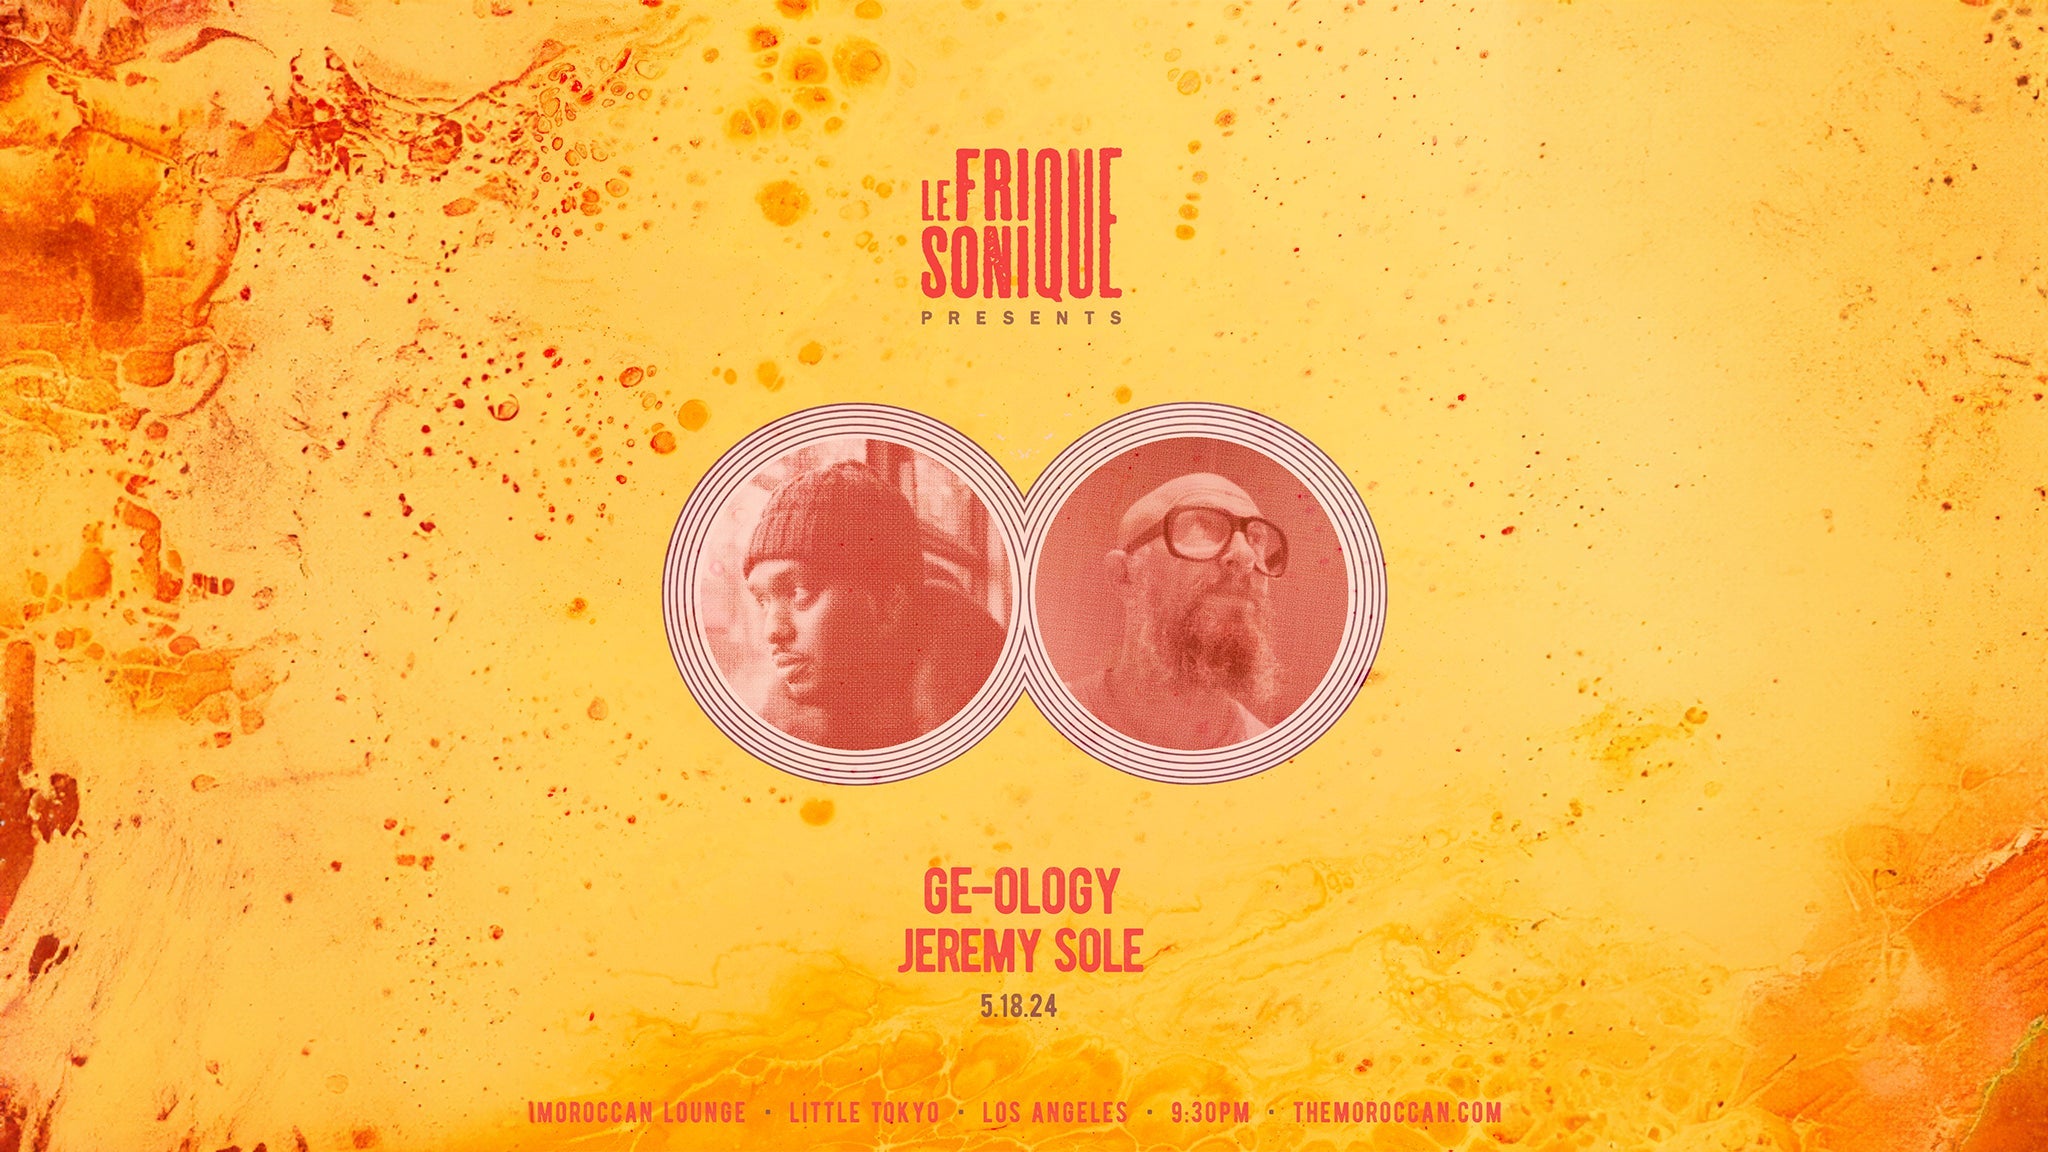 Jeremy Sole Presents: LE FRIQUE SONIQUE ft. Ge-Ology